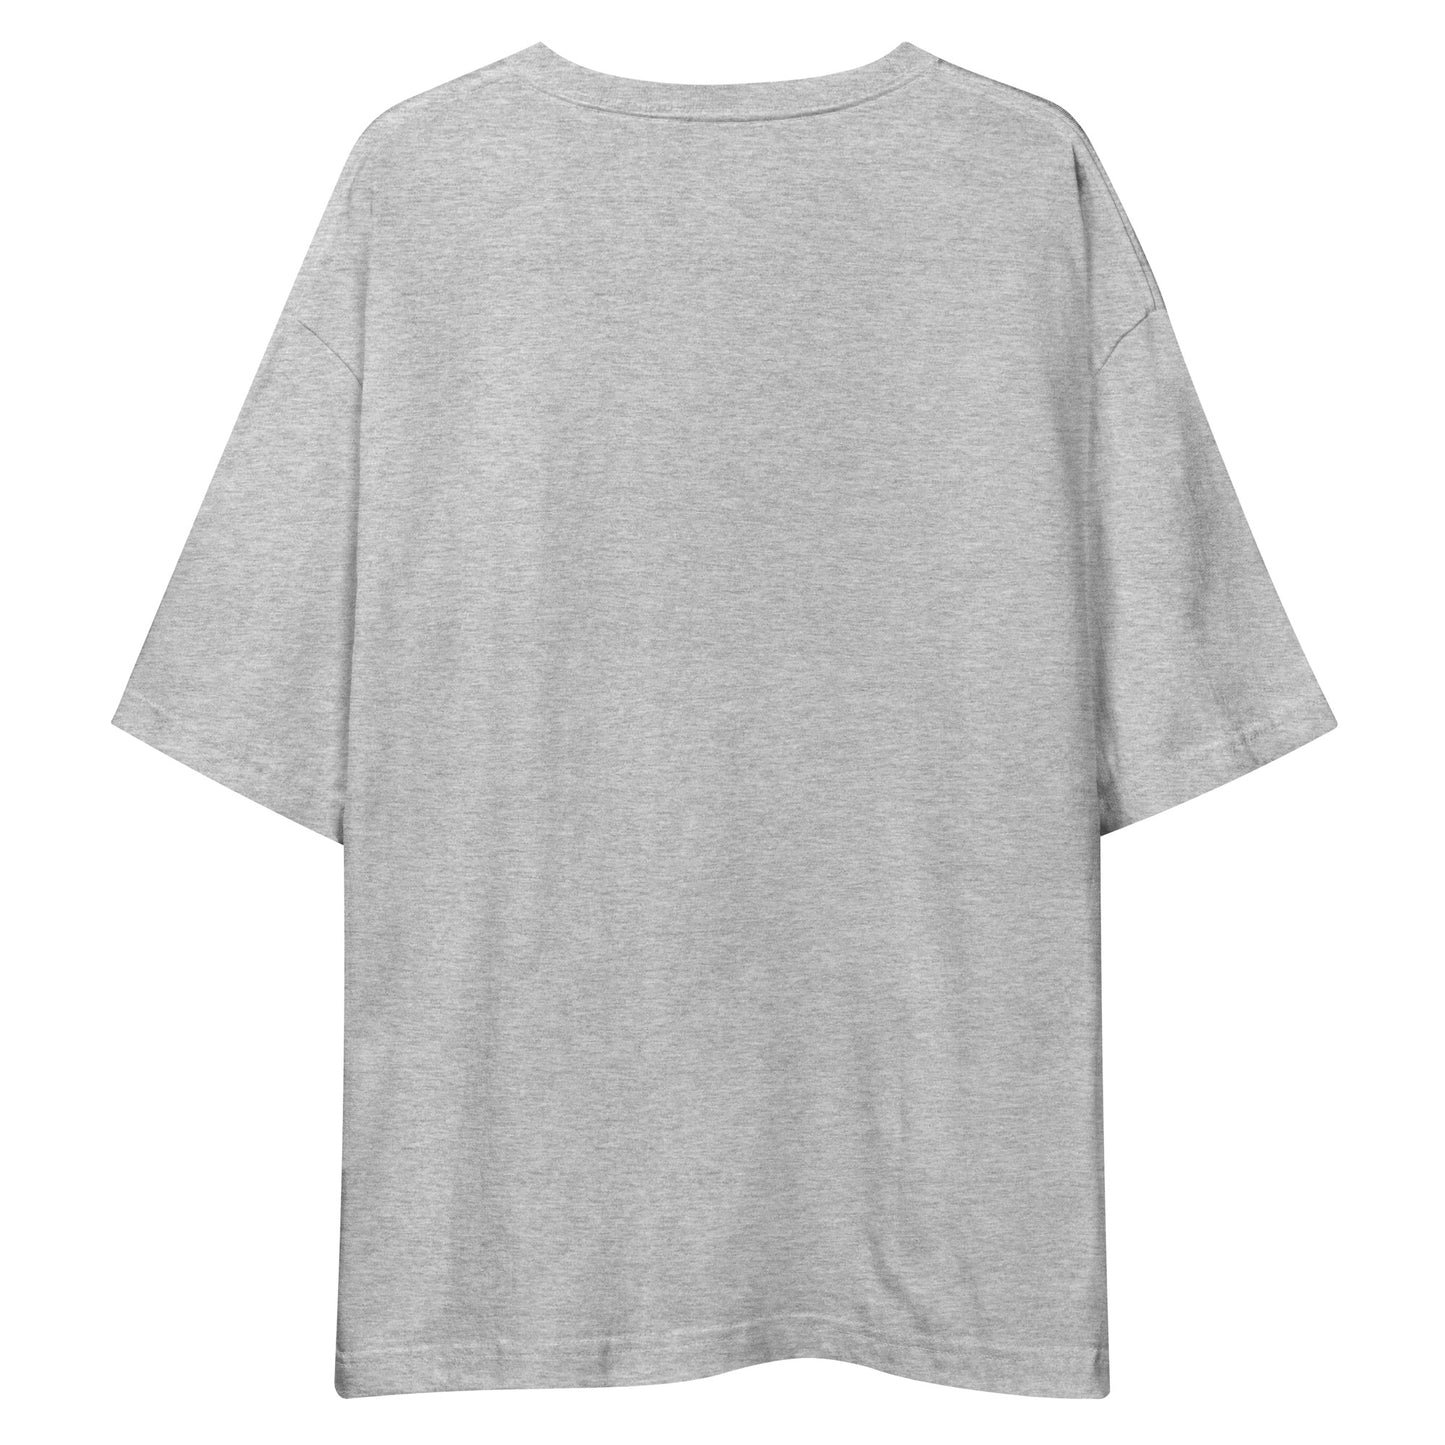 E217 - T-shirt/Oversized (Universal jump : Gray/Charcoal)